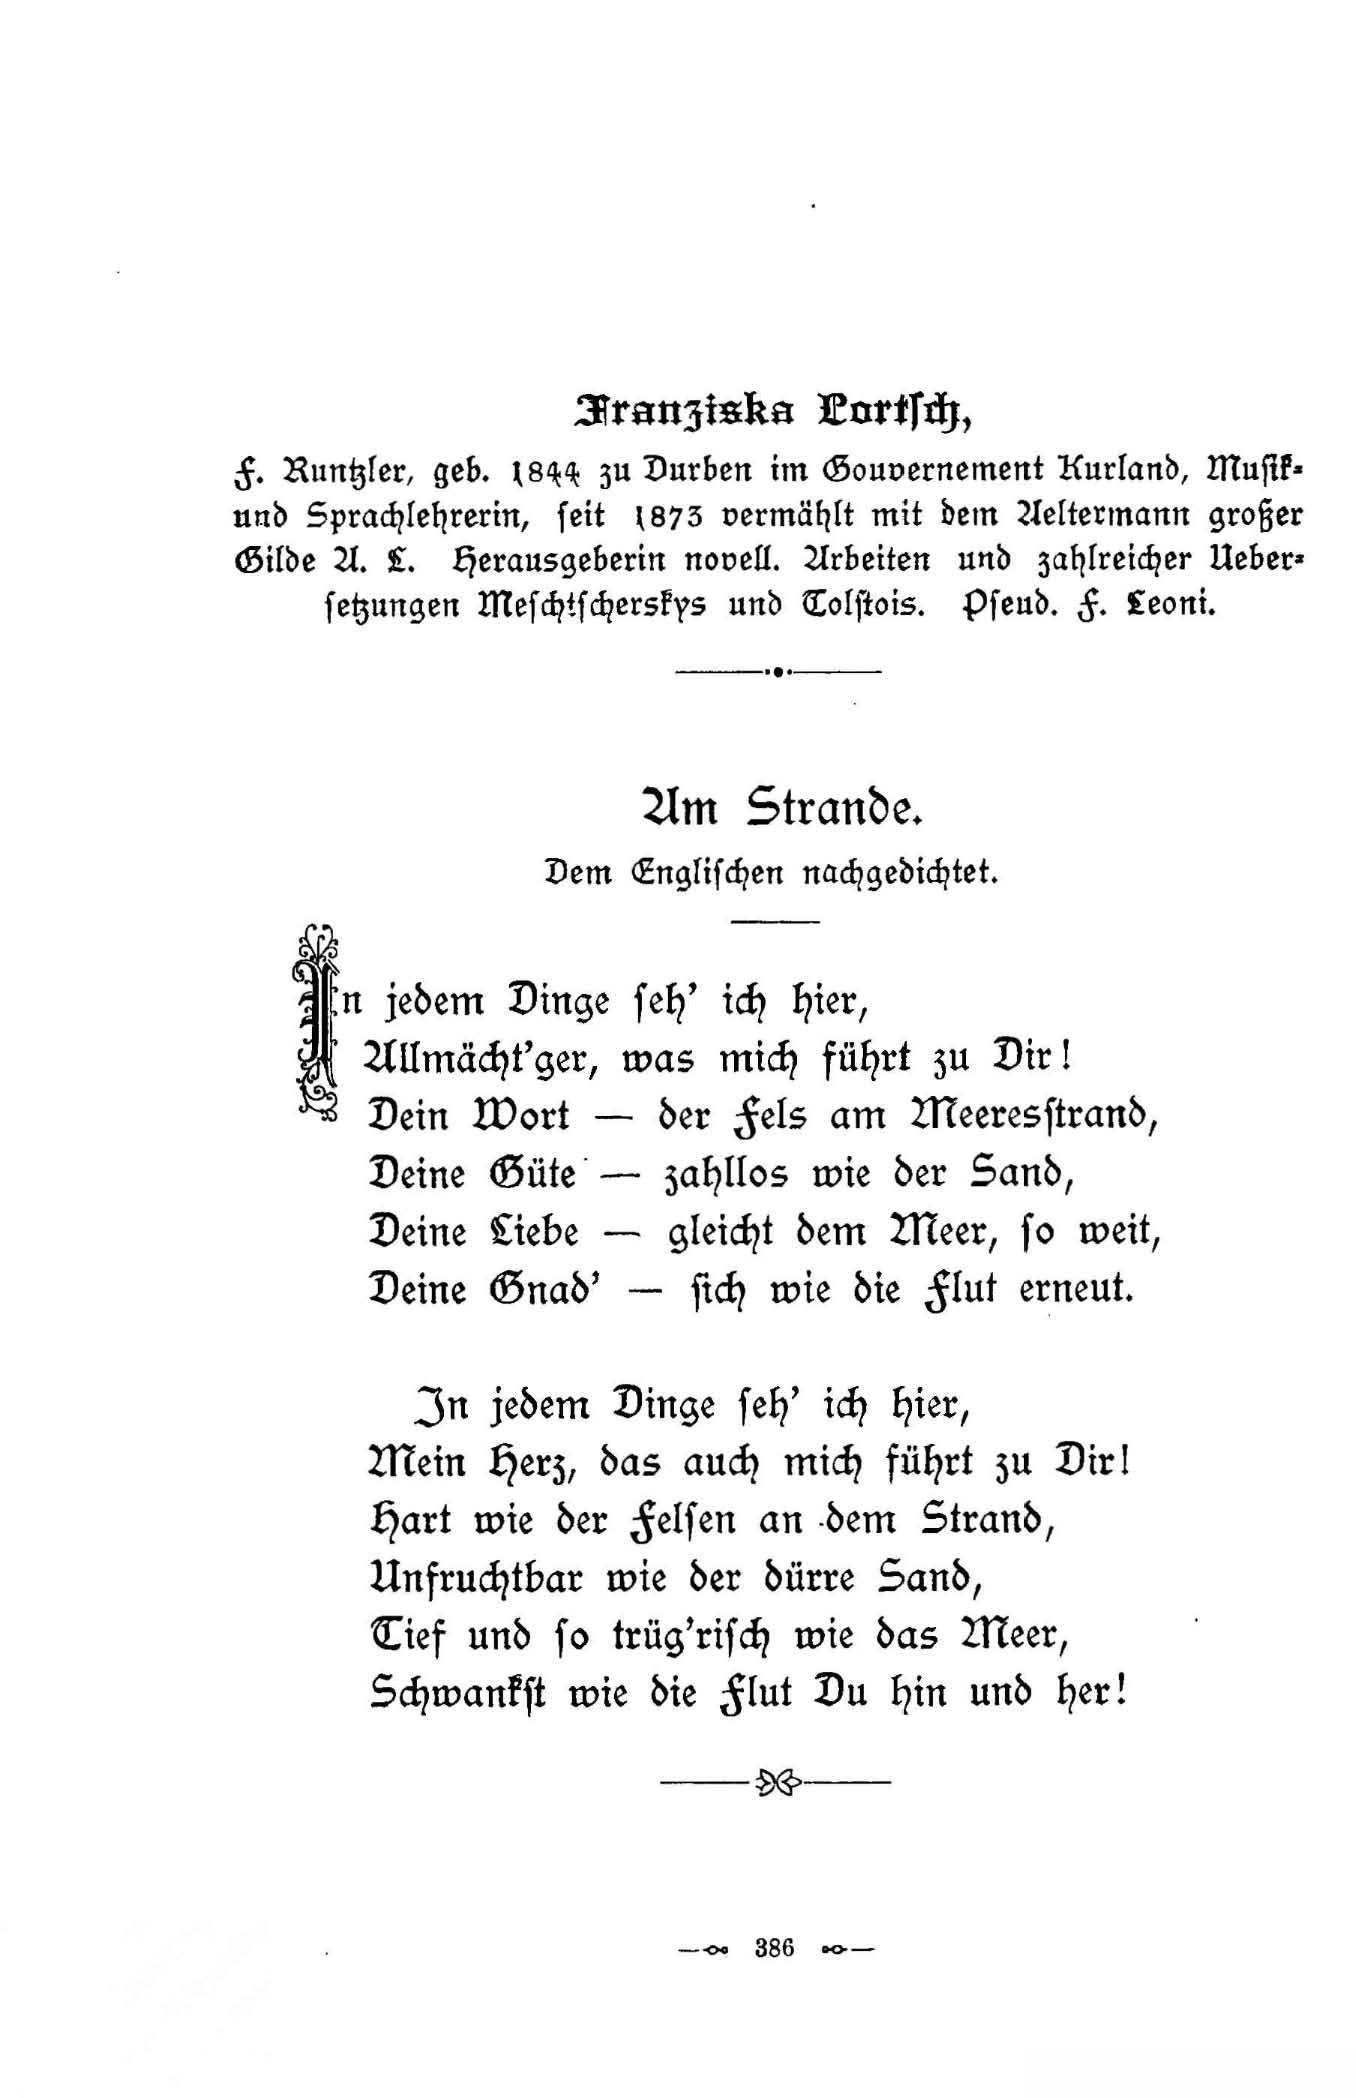 Am Strande (1896) | 1. (386) Põhitekst